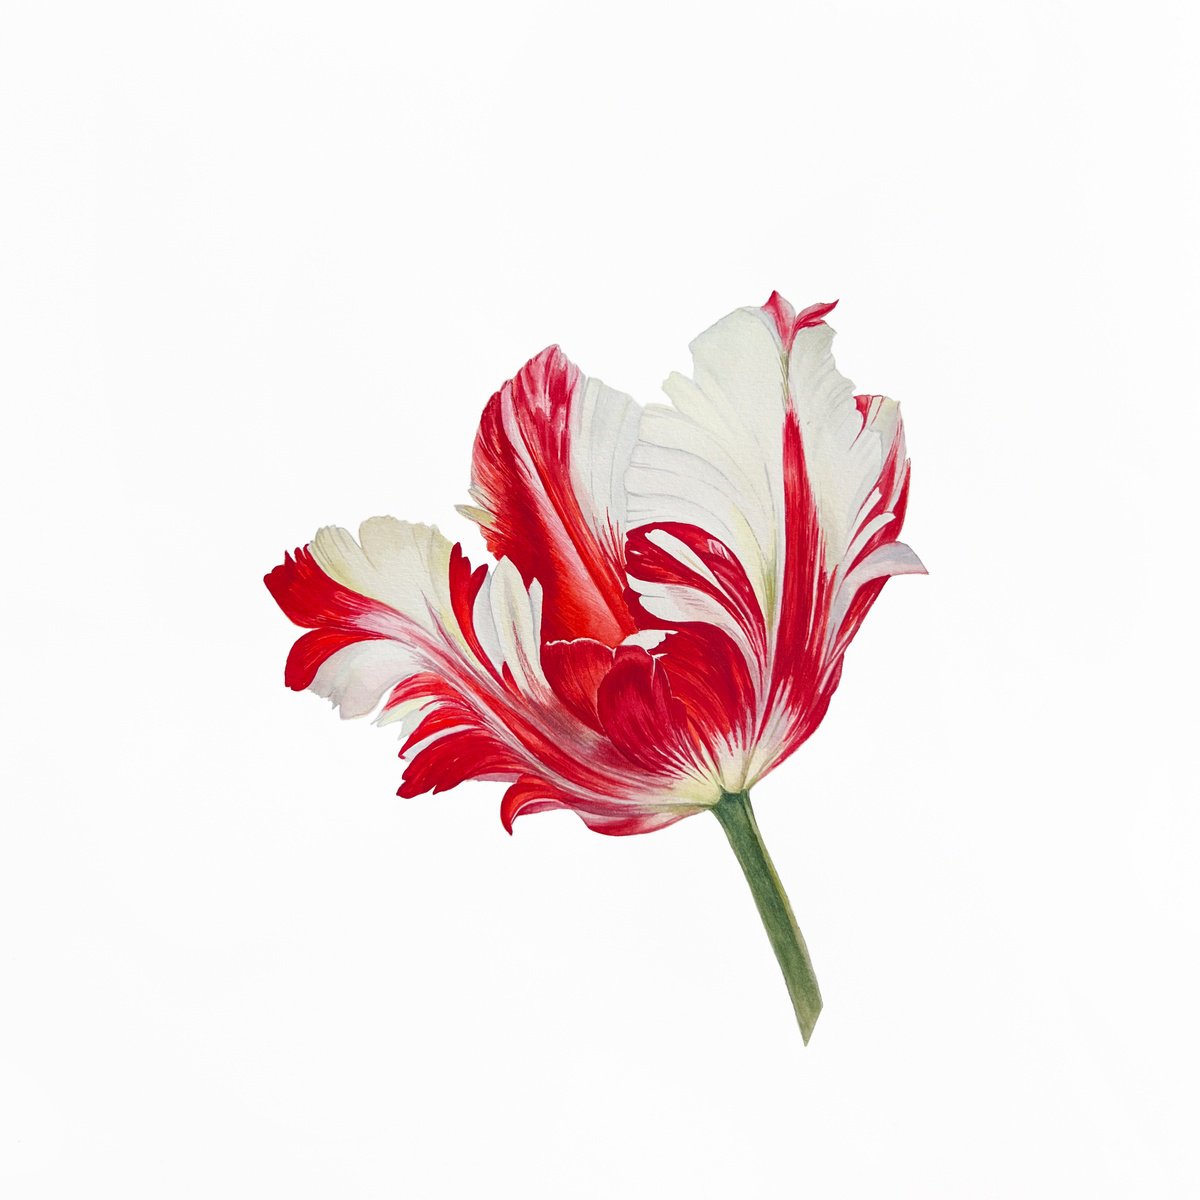 Tulip. Original watercolor artwork. by Nataliia Kupchyk